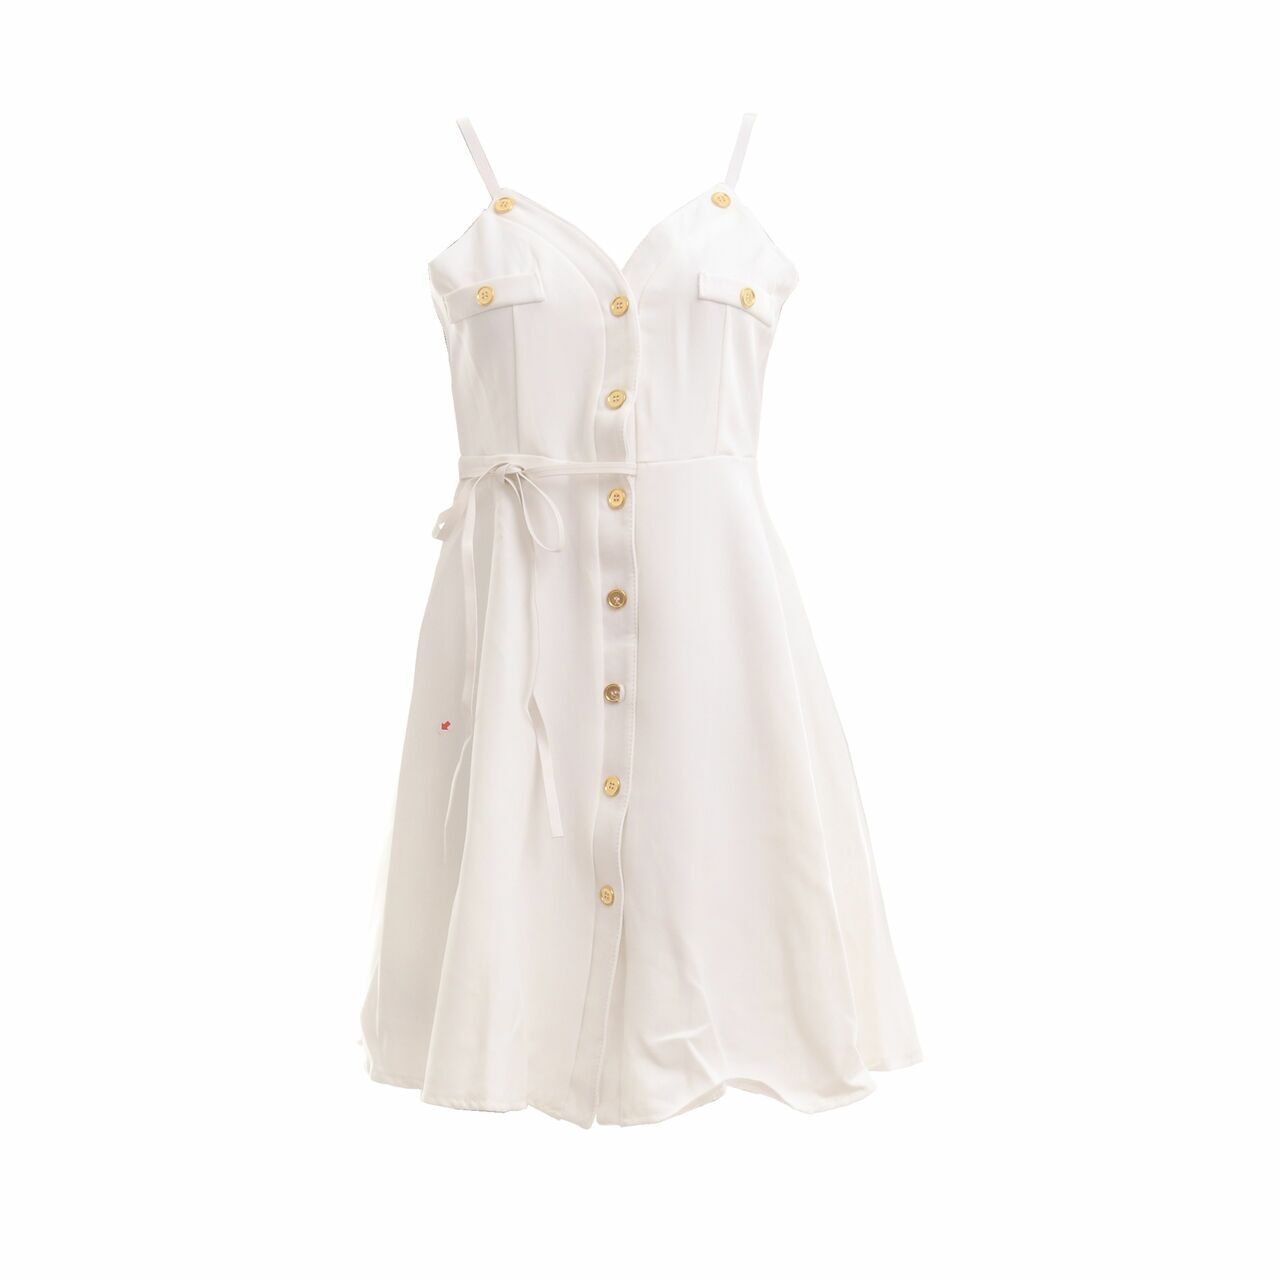 Grinitty White Mini Dress